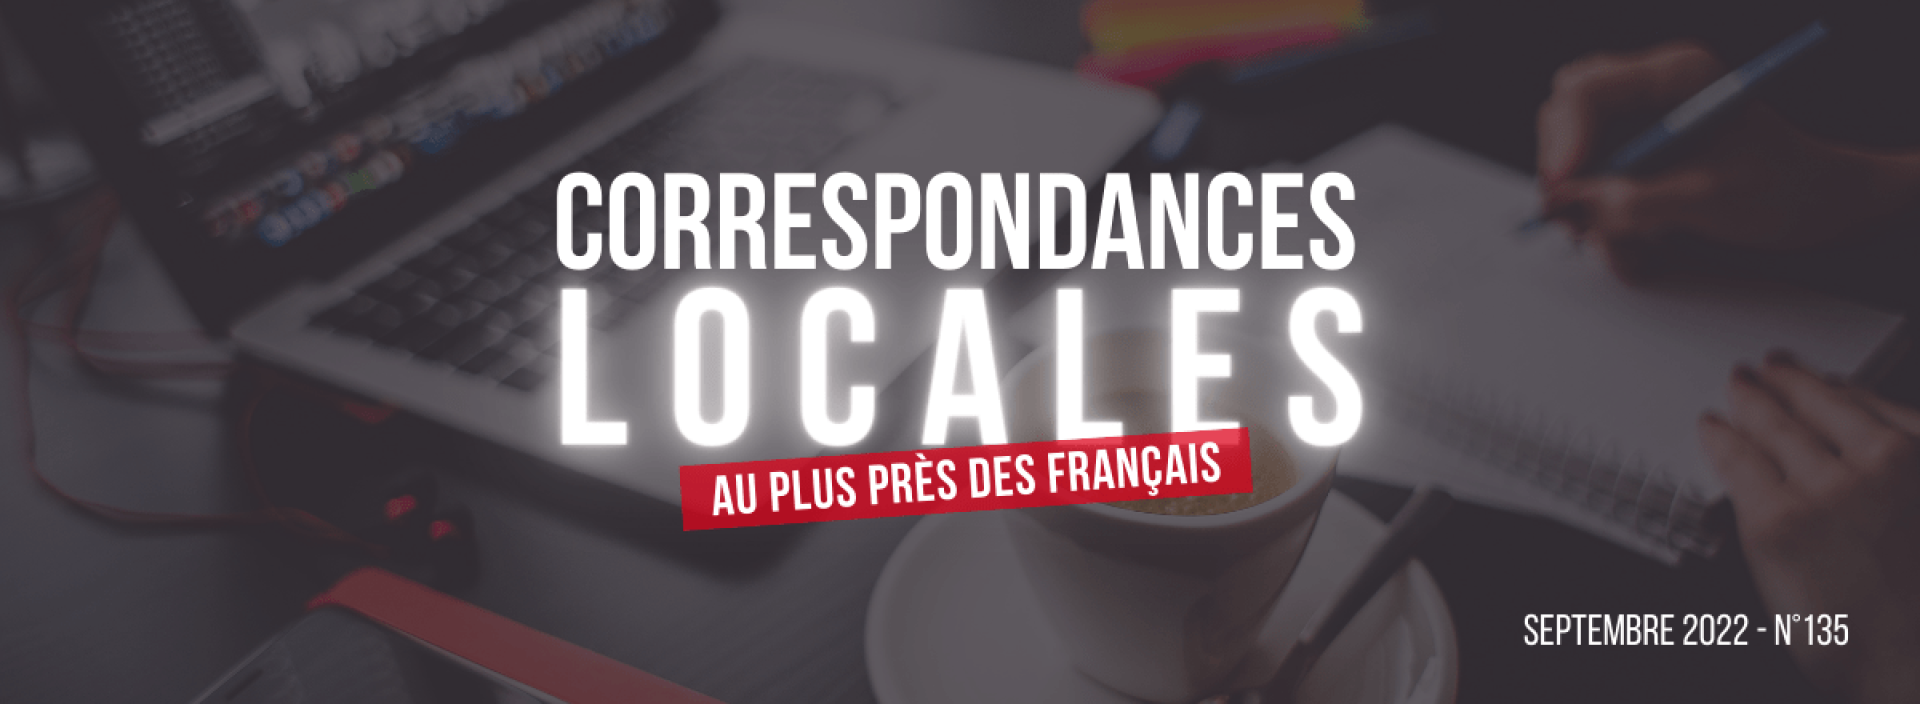 Bannière Correspondances Locales (9)